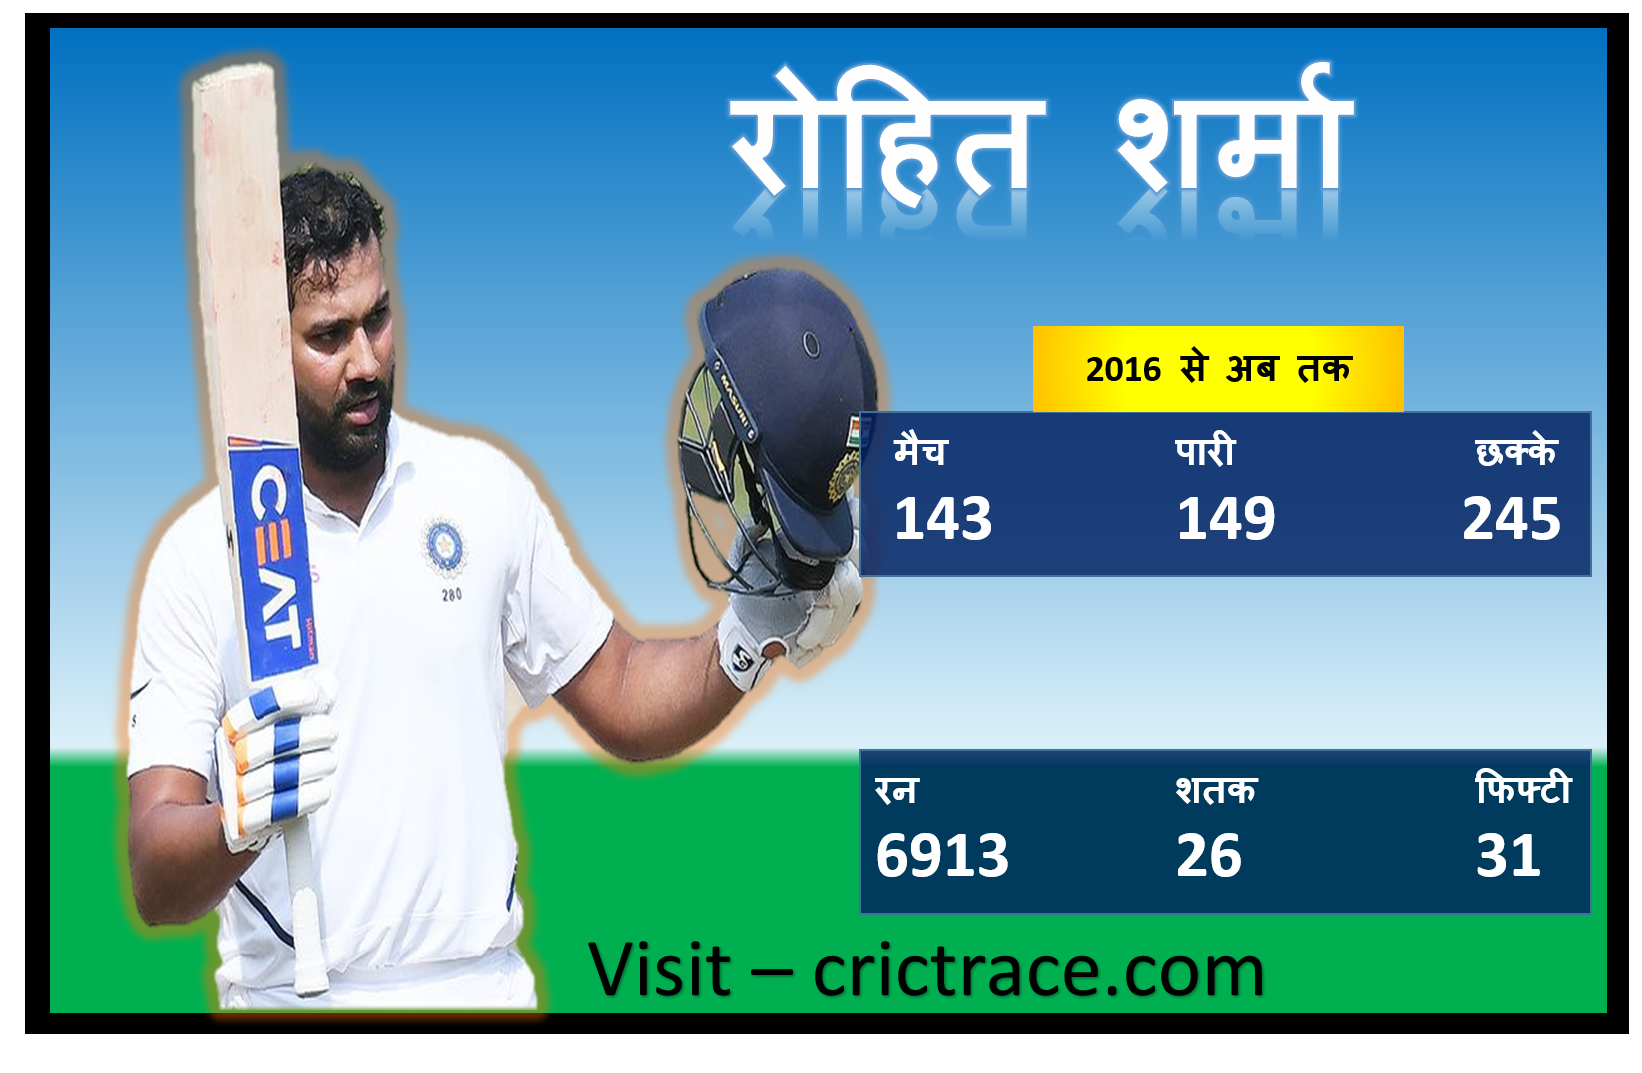 रोहित शर्मा ने लगाए 2016 के बाद इंटरनेशनल क्रिकेट में सबसे ज्यादा छक्के 